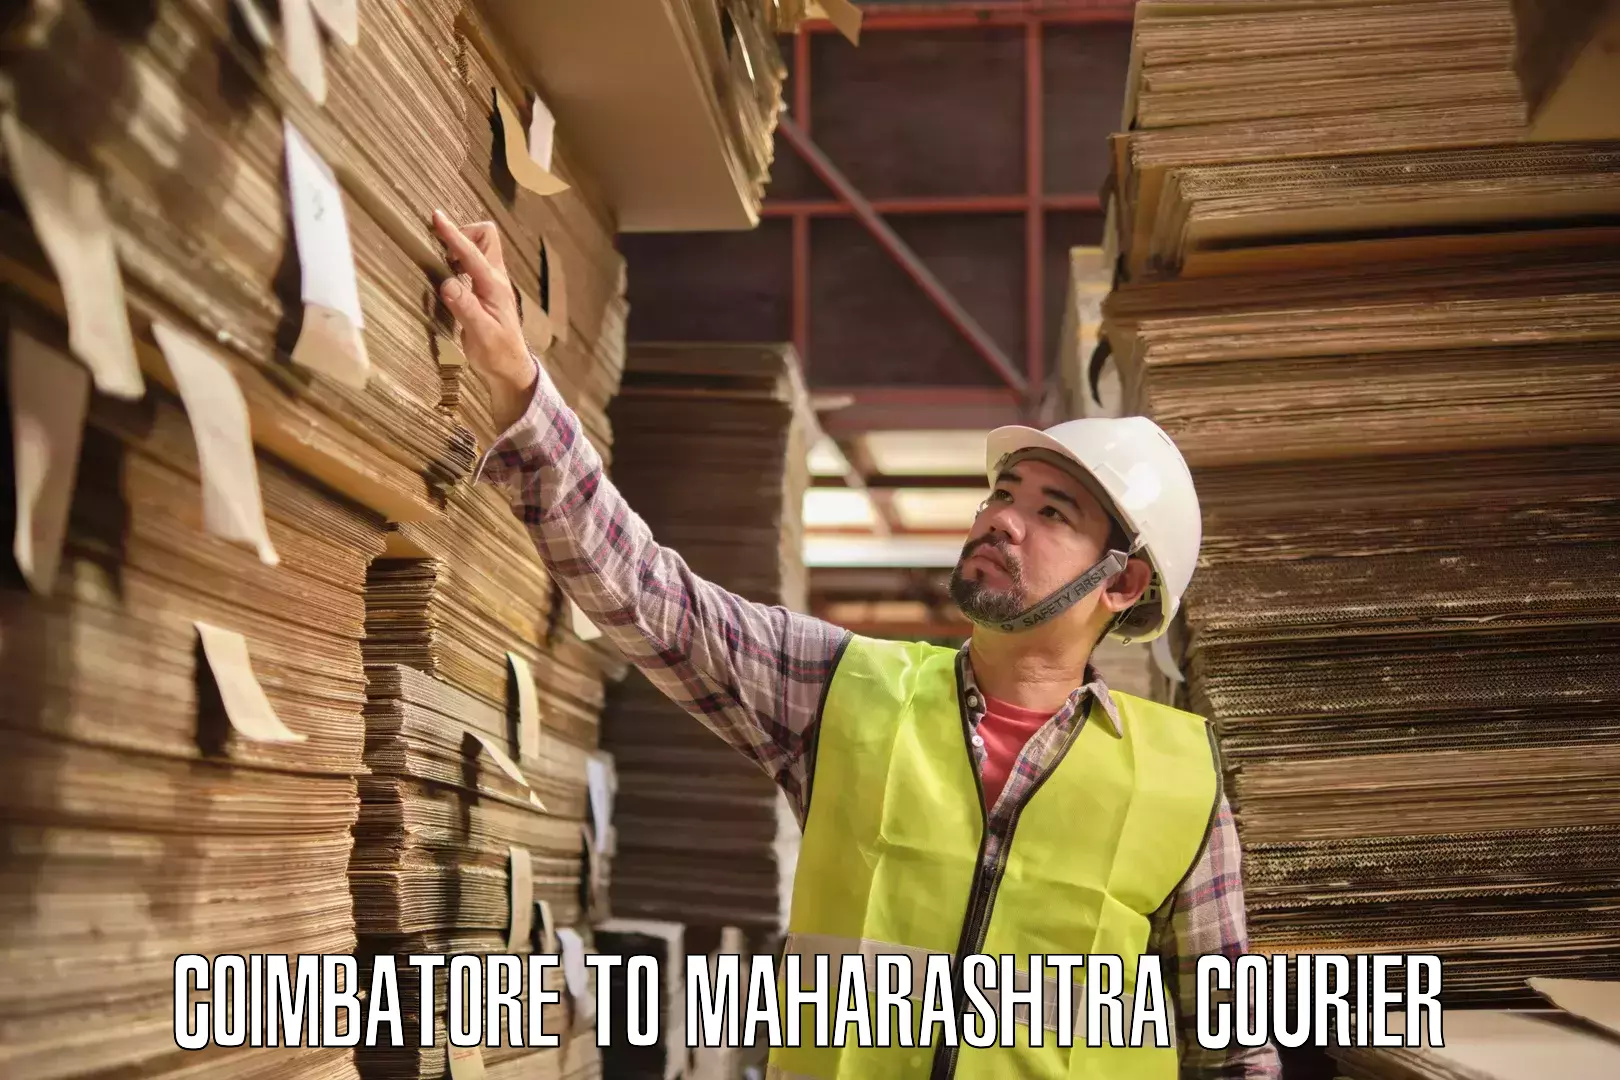 Global logistics network Coimbatore to Maharashtra